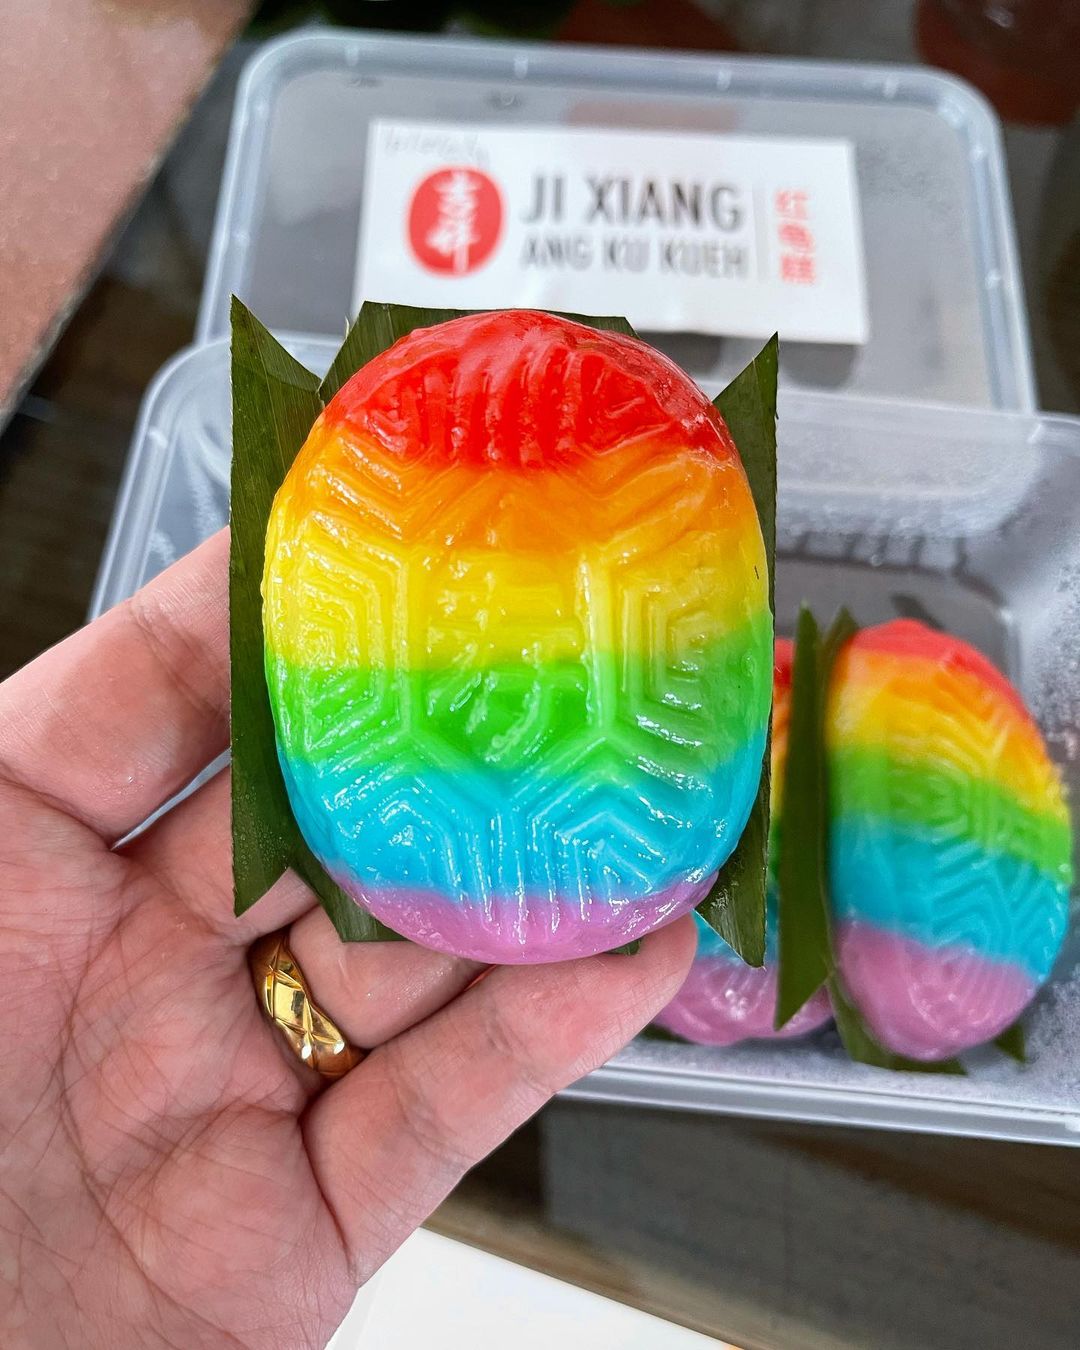 rainbow ang ku kueh ji xiang confectionery - close up